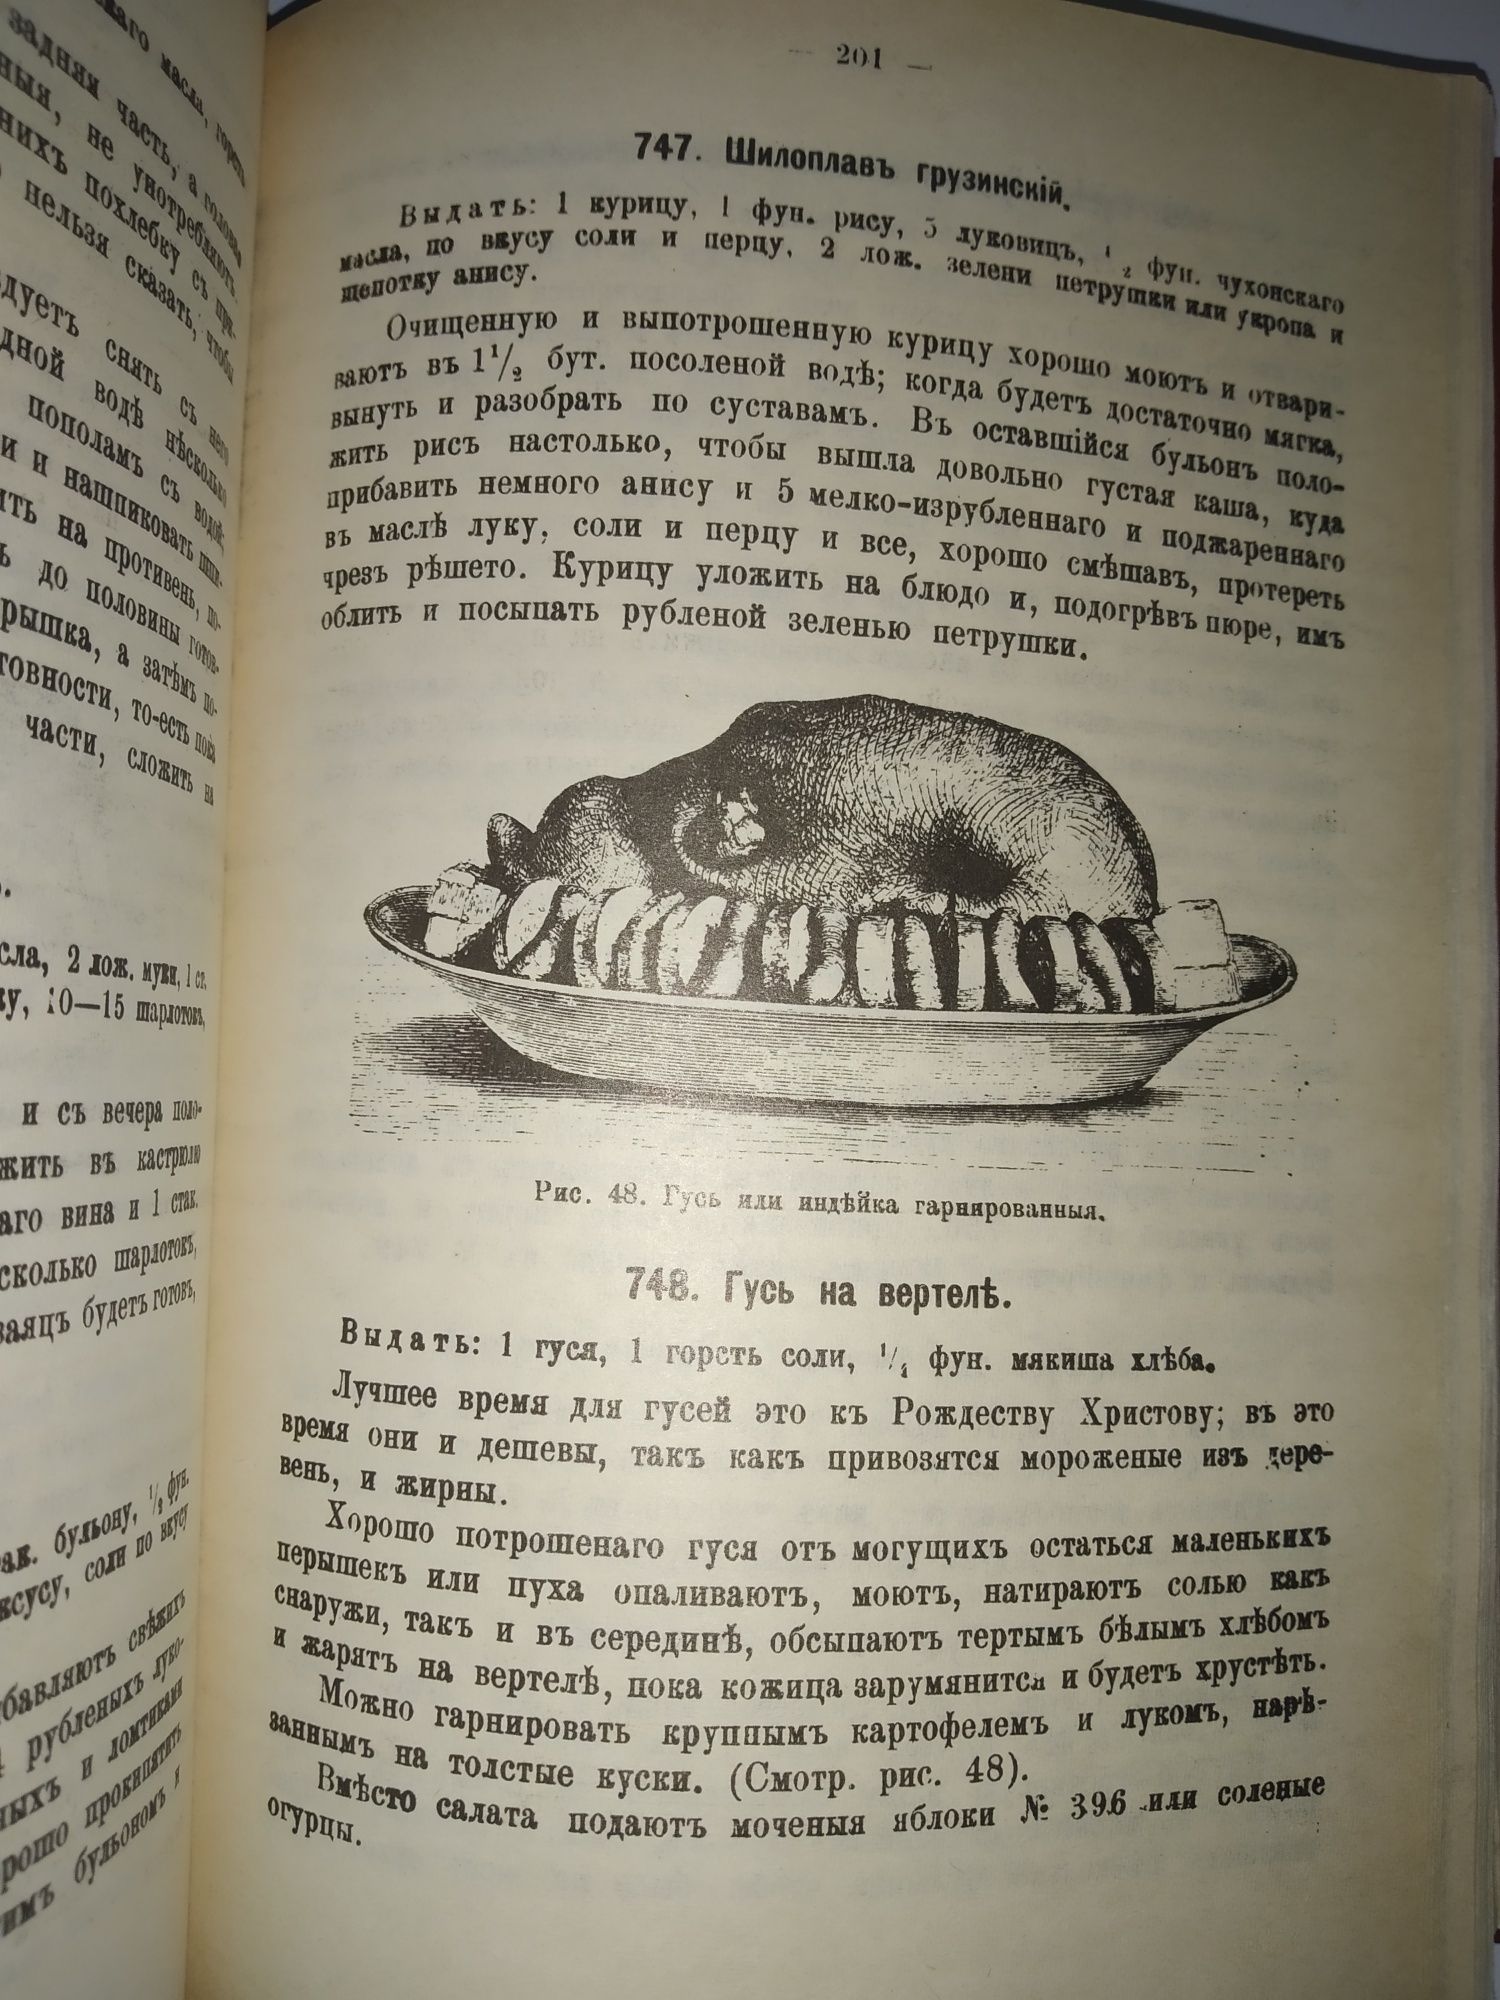 Старинная книга "Образцовая кухня" 1892 репринт